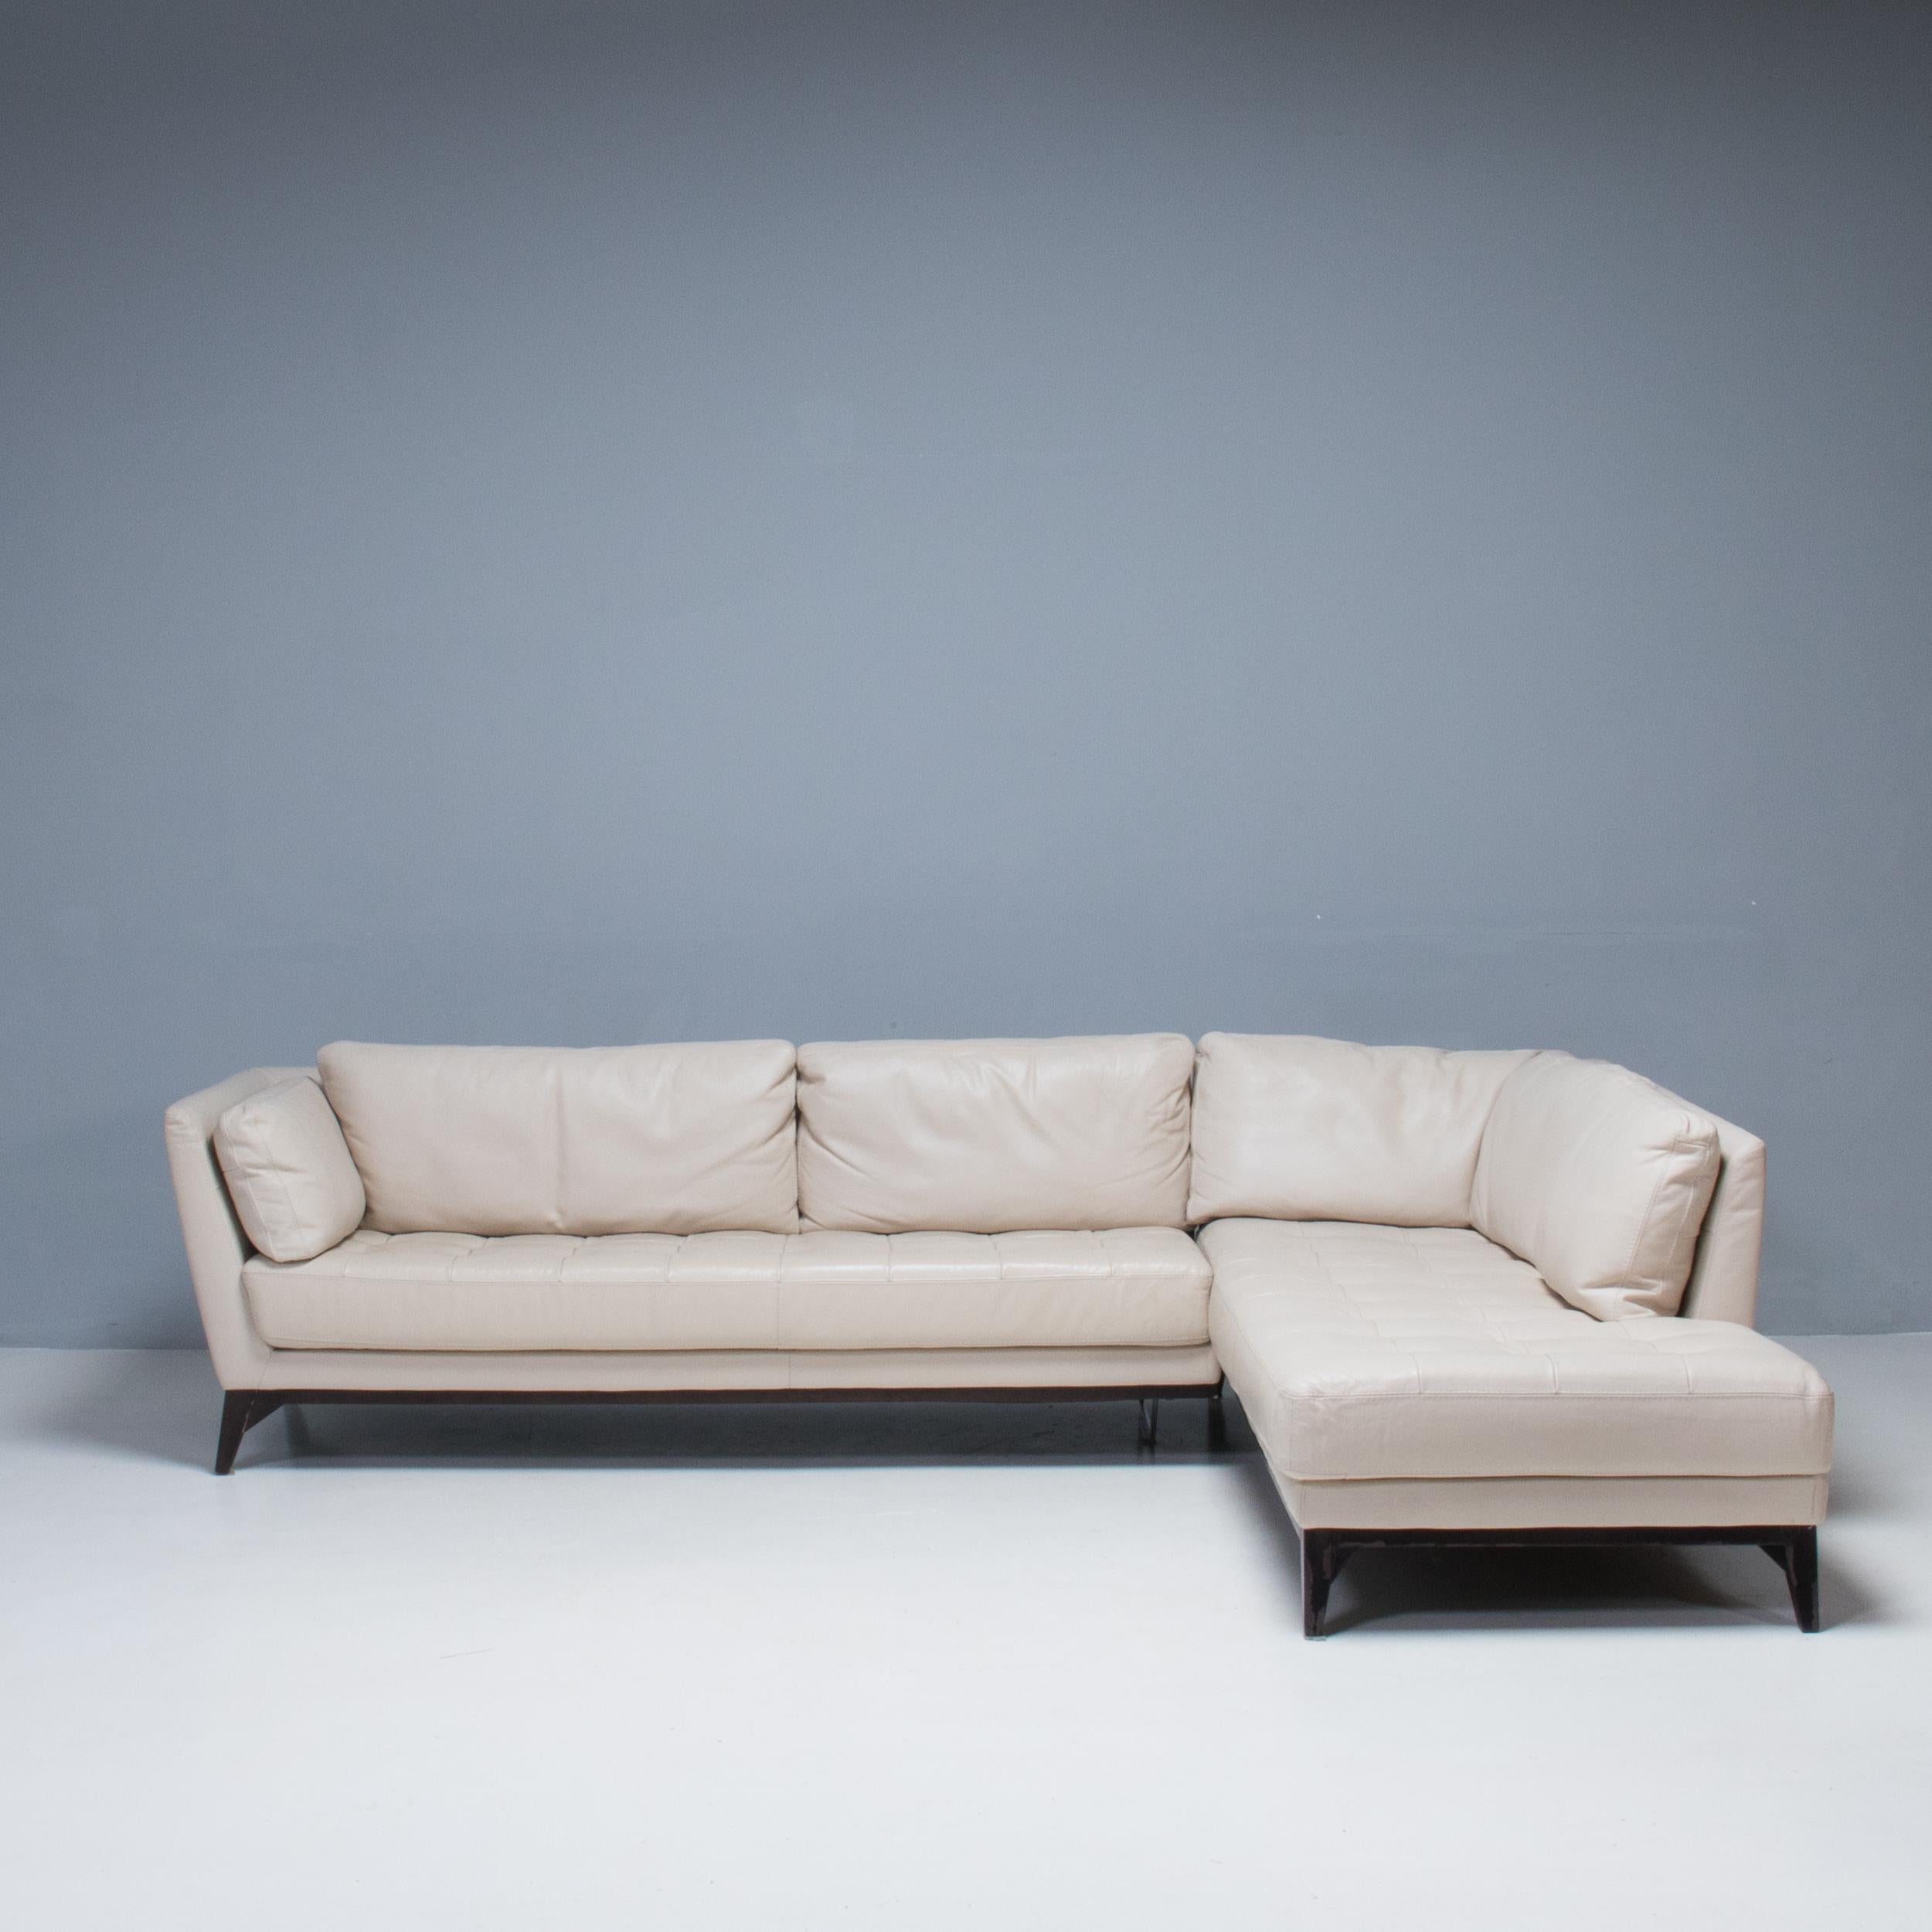 Conçu par Philippe Bouix pour Roche Bobois, le canapé Perception allie parfaitement confort et élégance du design moderne.

Construit à partir d'une structure en bois massif et en contreplaqué sur une base en hêtre teinté, le canapé présente une